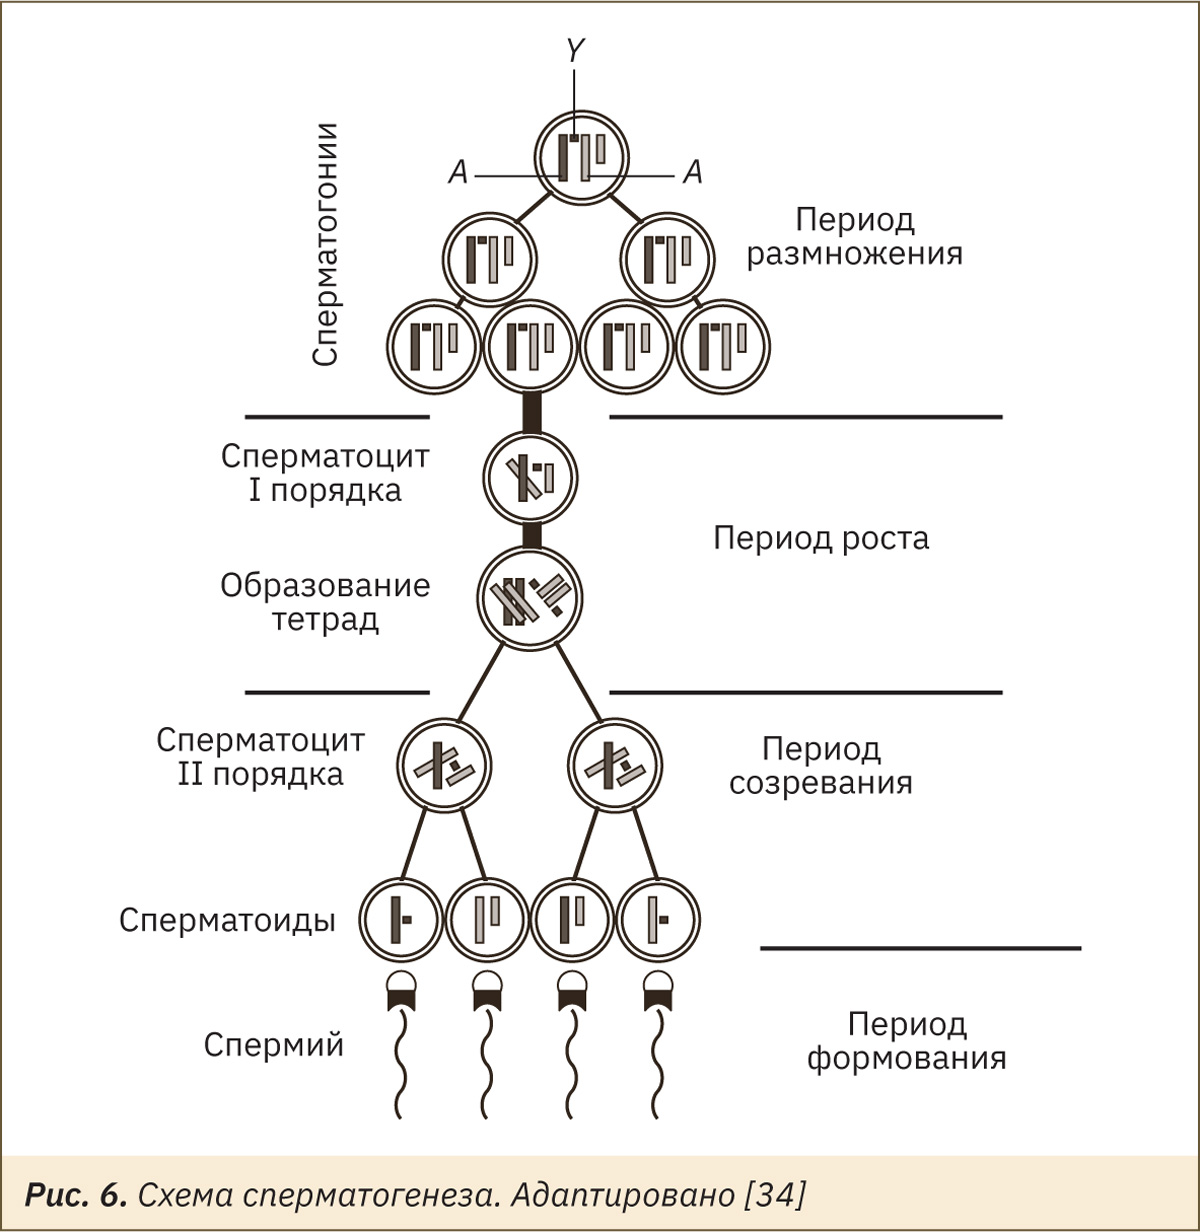 Клетку называют сперматоцитов ii порядка. Сперматогонии. Формирование сперматоцитов. Сперматоцит 1 порядка. Сперматогонии b.